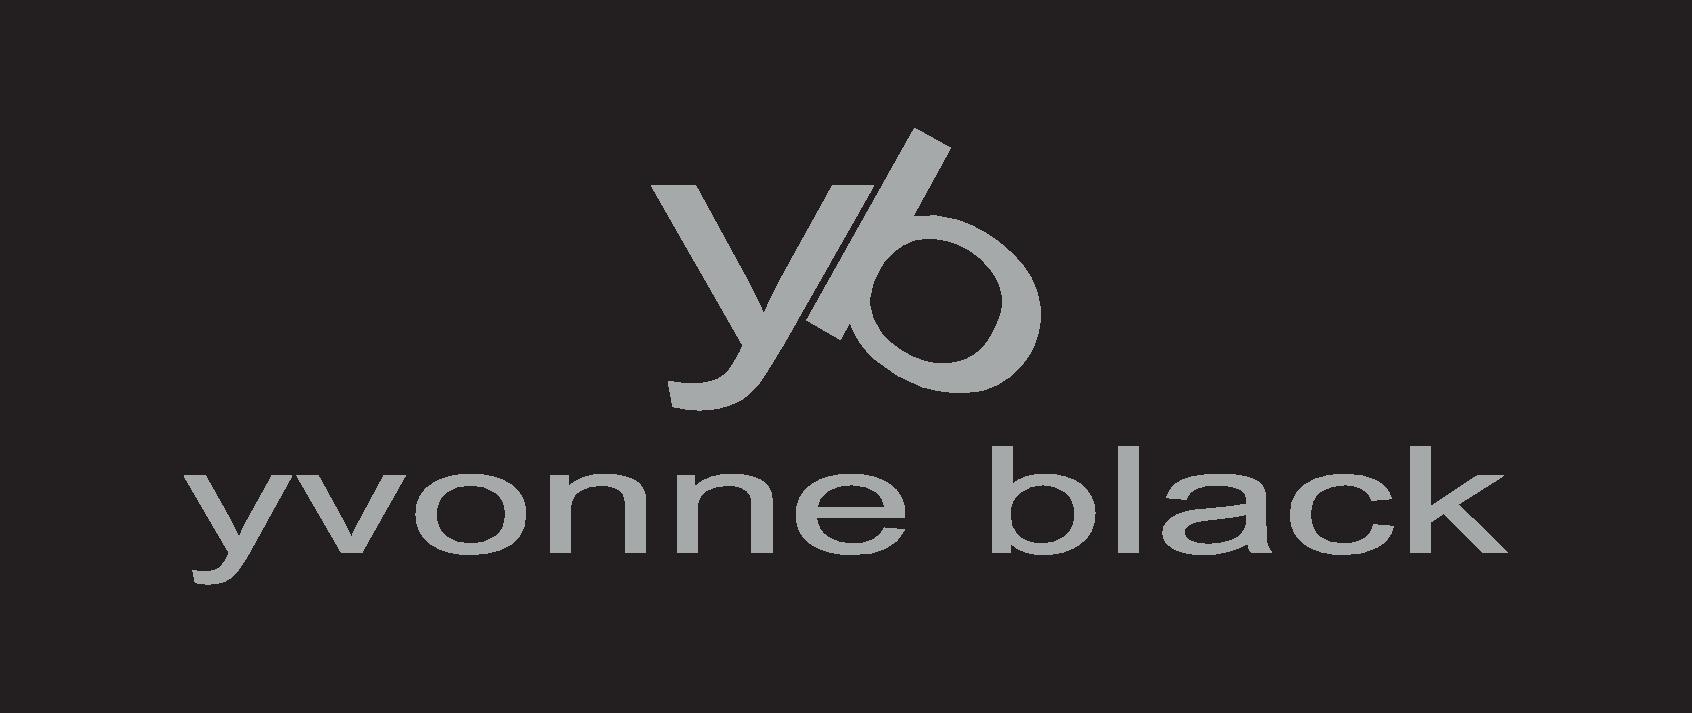 yvonne-black-logo-long-page-001.jpg